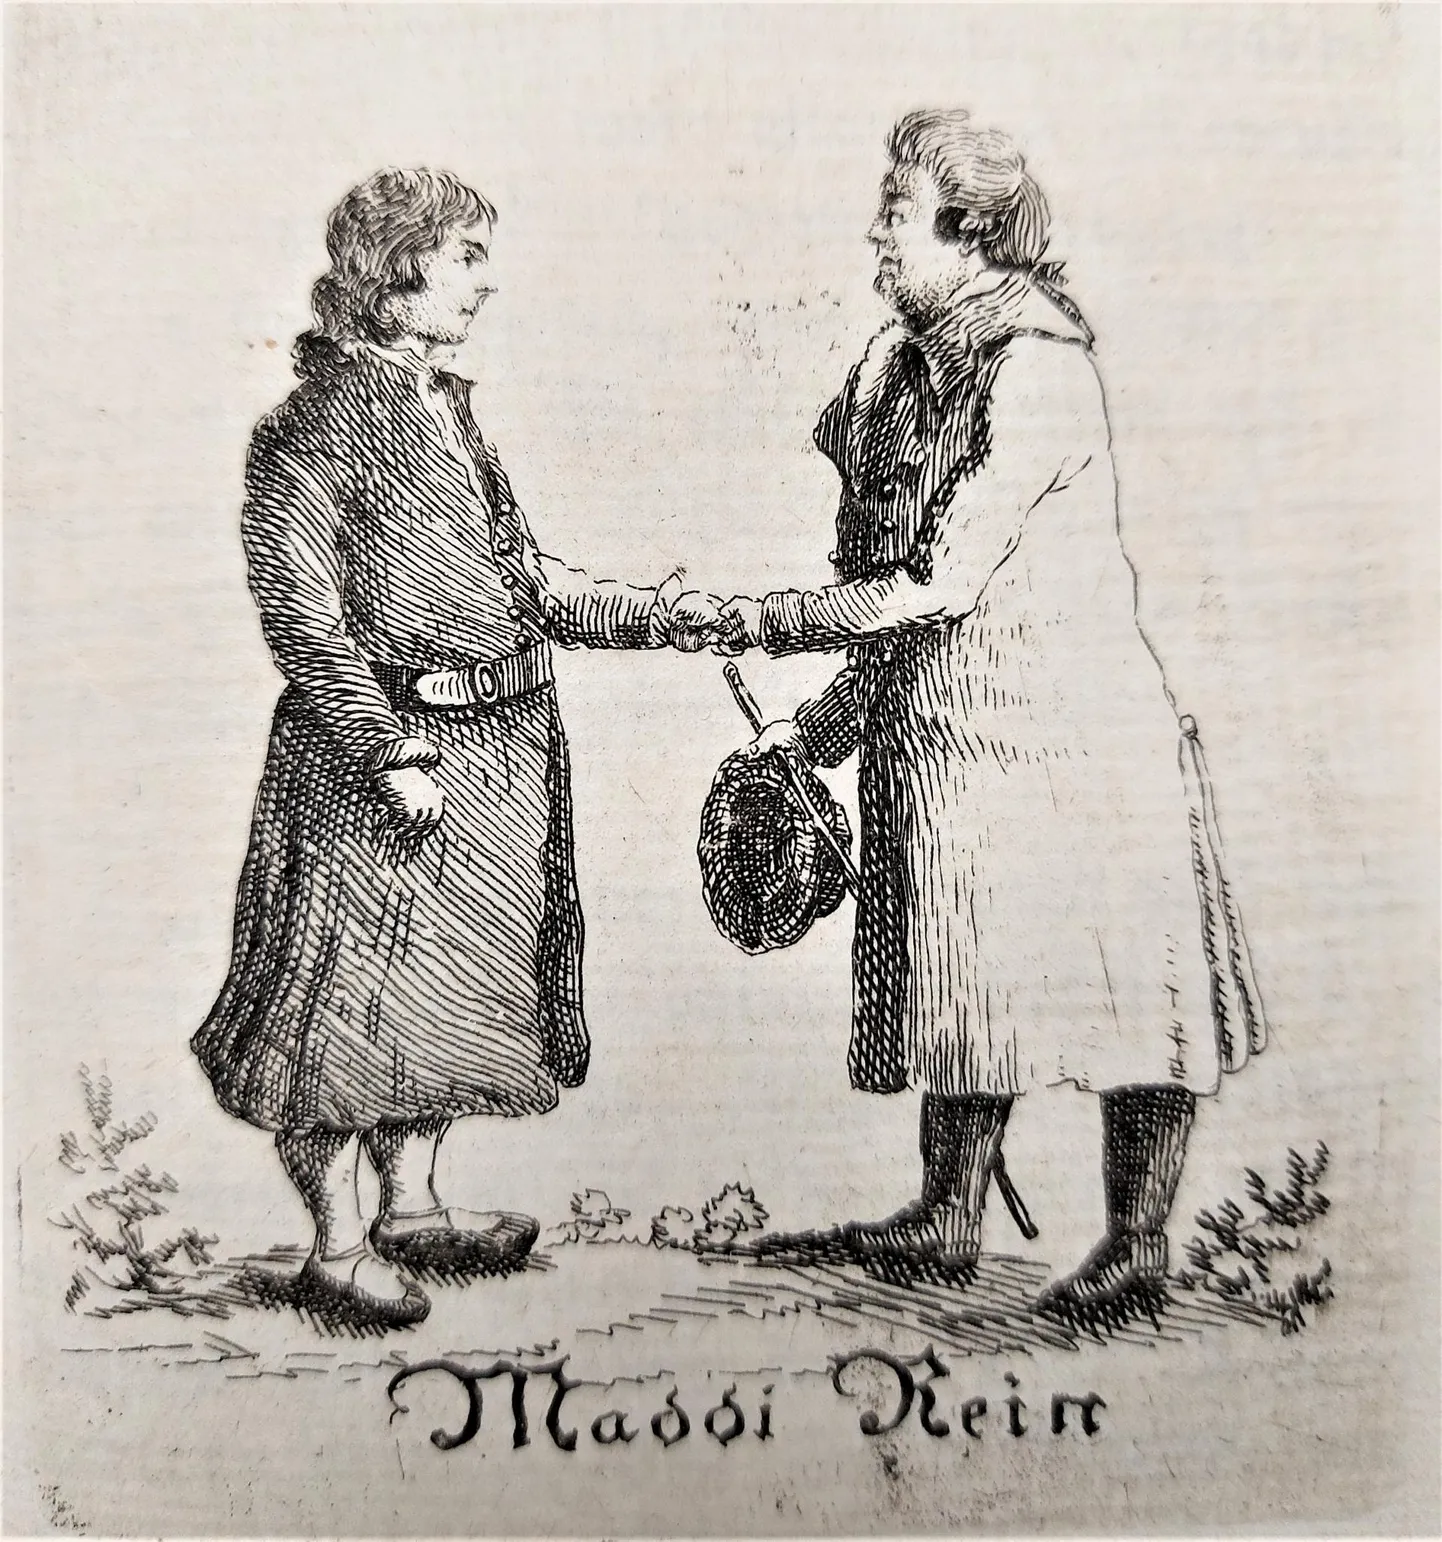 Otto Wilhelm Masingu joonistus, mis illustreeris tema juttu «Maddi Rein» ajalehes Marahwa Näddala-Leht nr 37/1821, on eesti ajakirjanduse esimene illustratsioon.